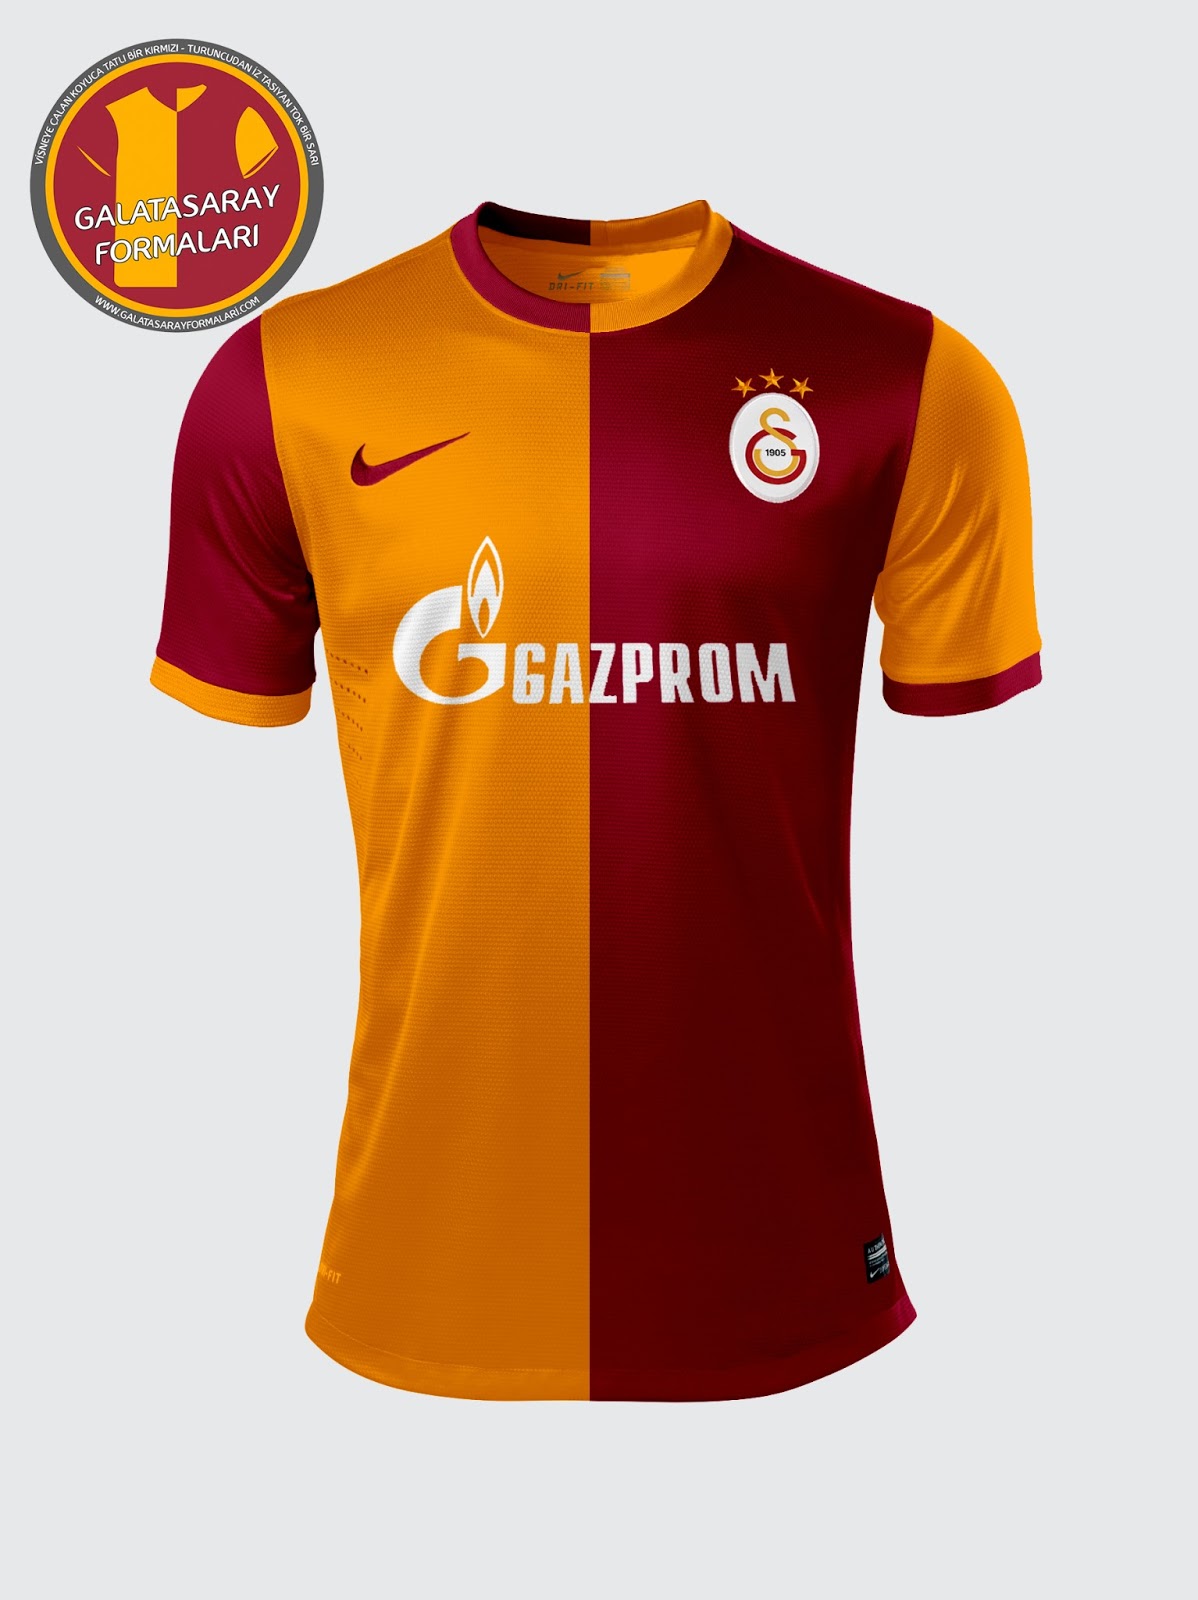  Galatasaray'a dev sponsorluk için tek şart!